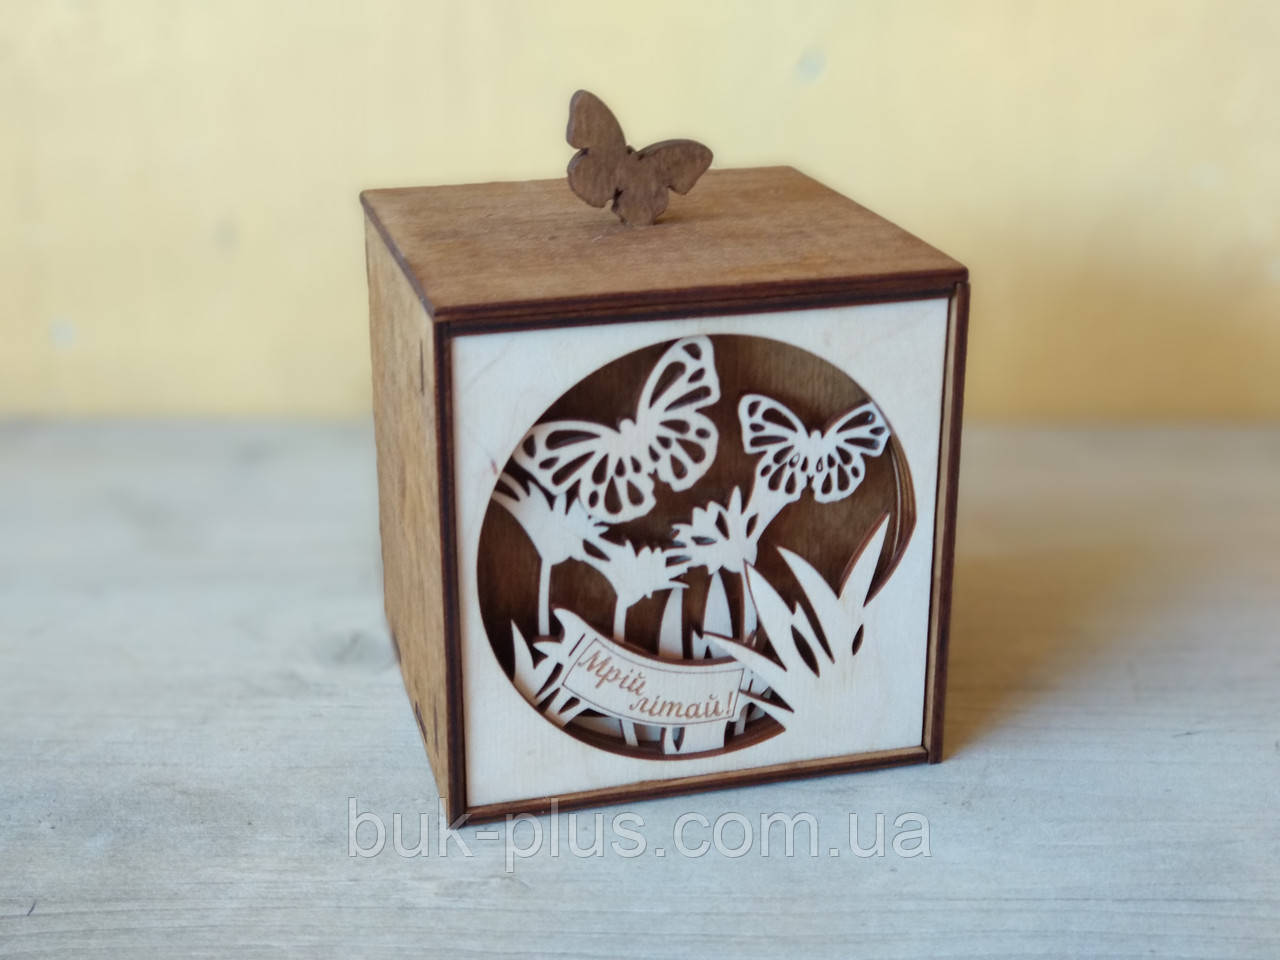 Подарочная коробка "Мрій, літай" бабочки 10х10 см.